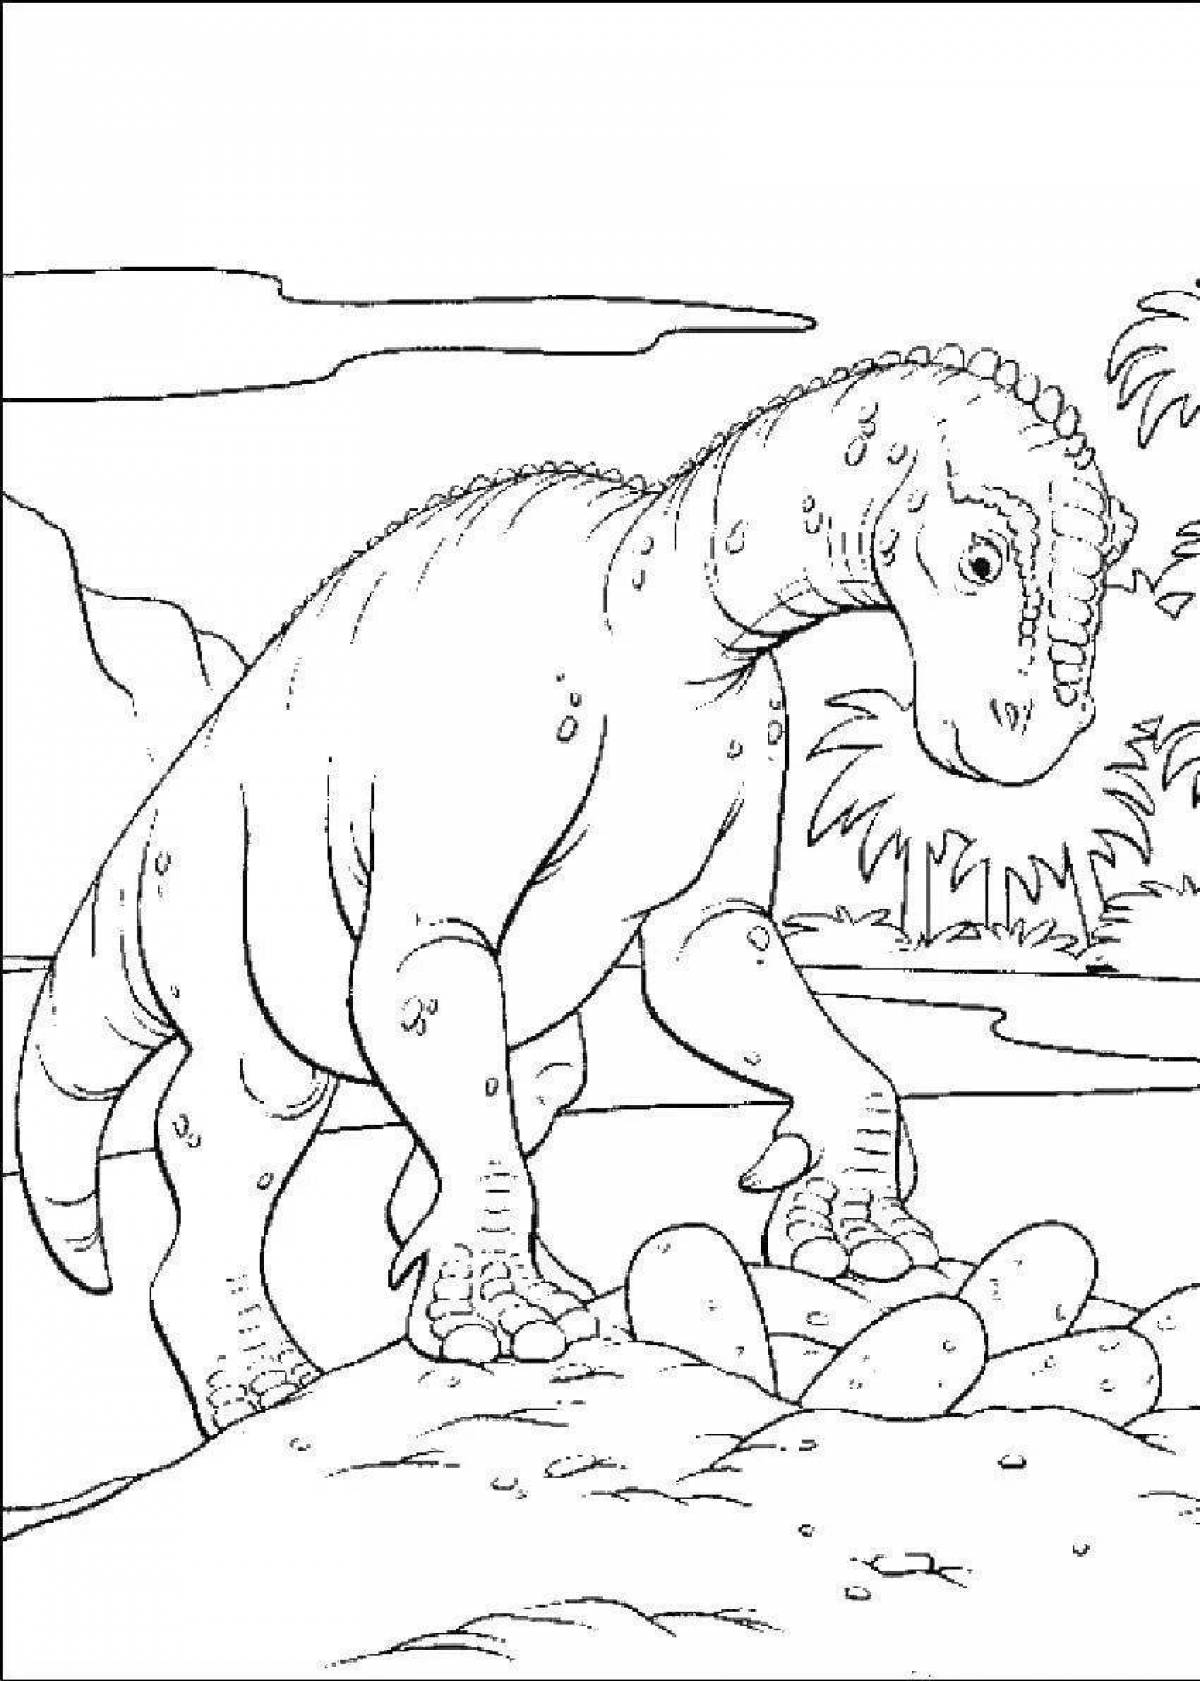 Динозавр раскраска распечатать а4. Игуанодон динозавр раскраска. Картинки динозавров для раскрашивания. Рисунок динозавра для раскрашивания. Динозаврики раскраска для детей.